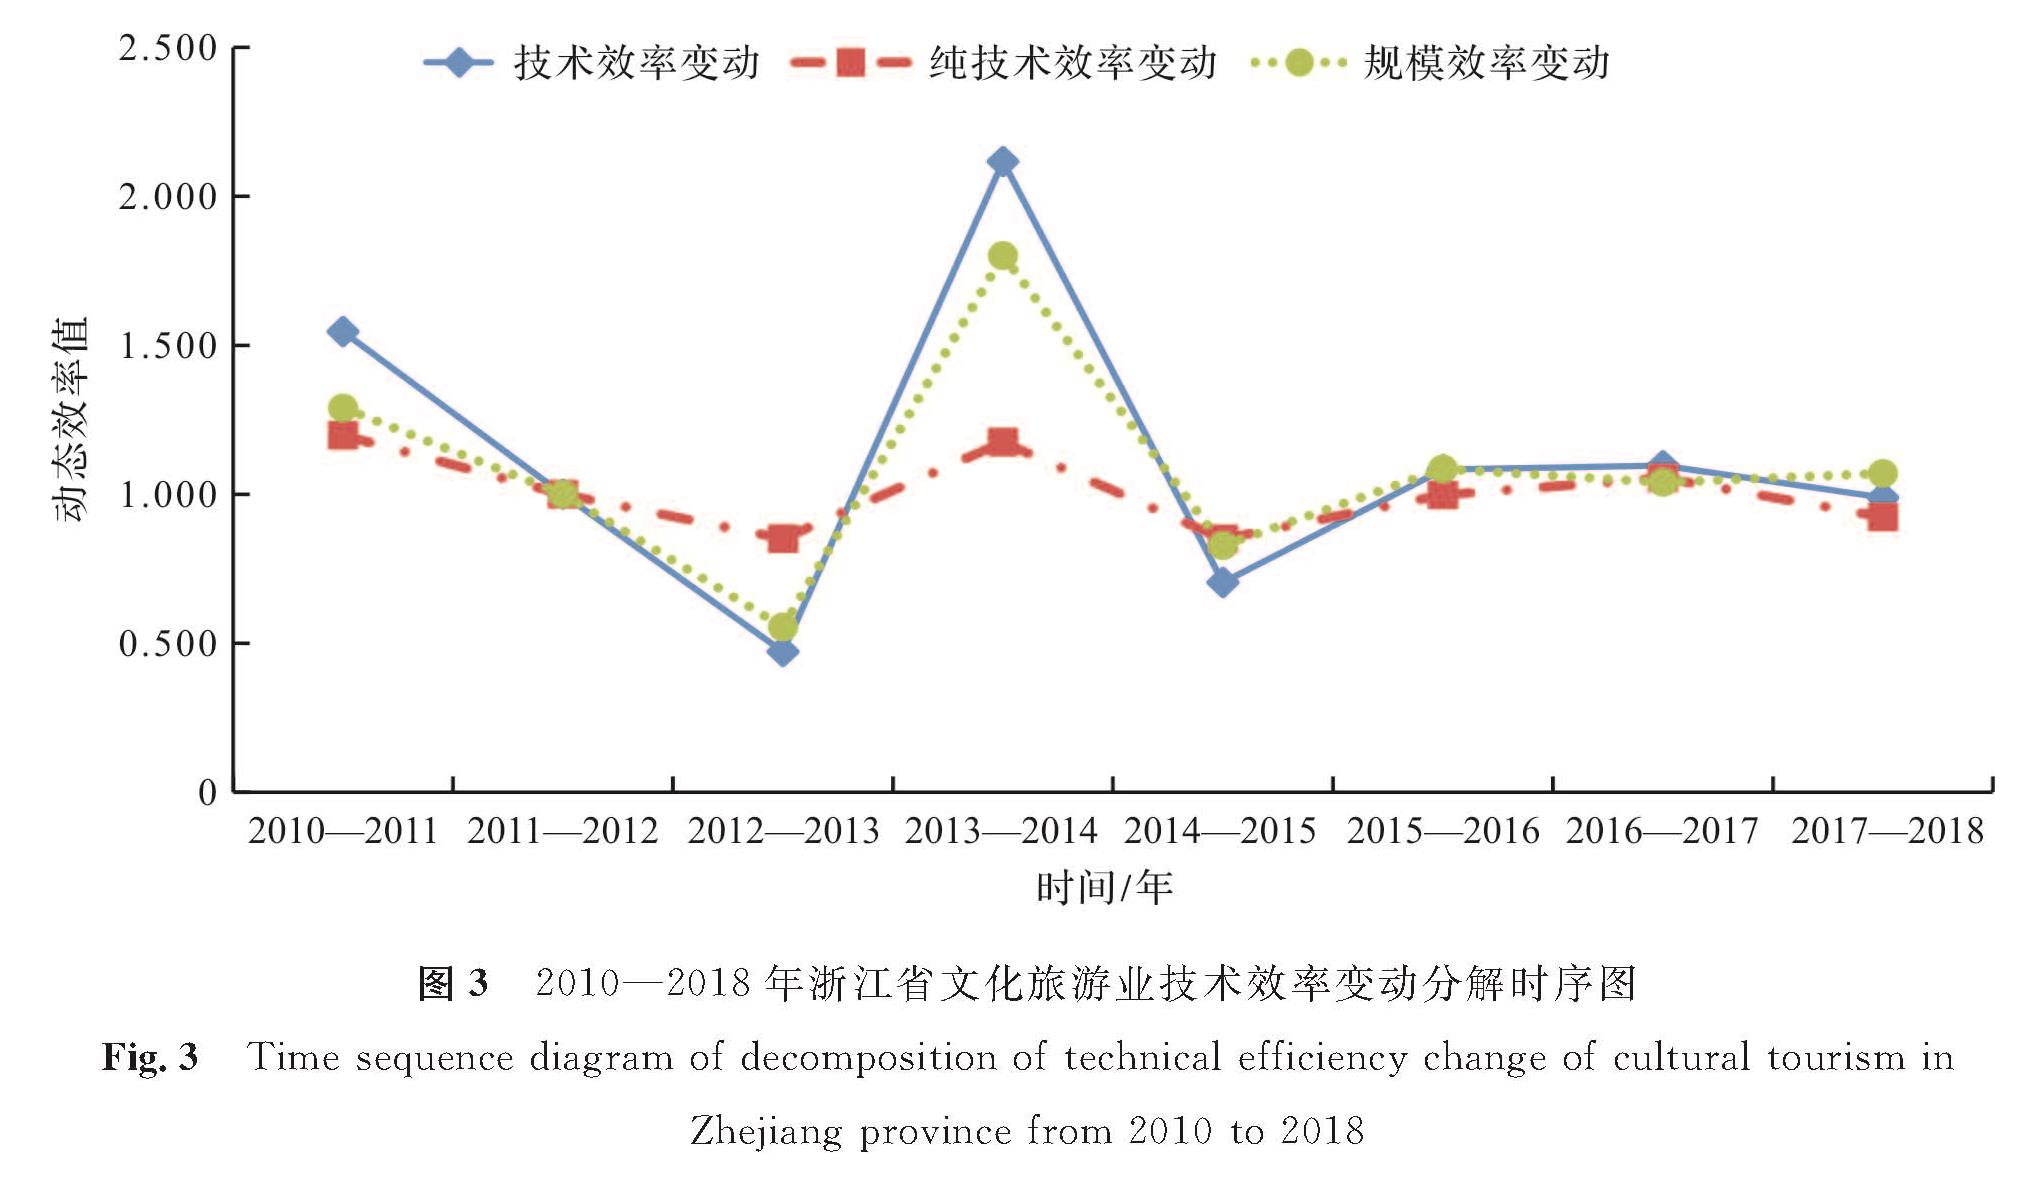 图3 2010—2018年浙江省文化旅游业技术效率变动分解时序图<br/>Fig.3 Time sequence diagram of decomposition of technical efficiency change of cultural tourism in Zhejiang province from 2010 to 2018